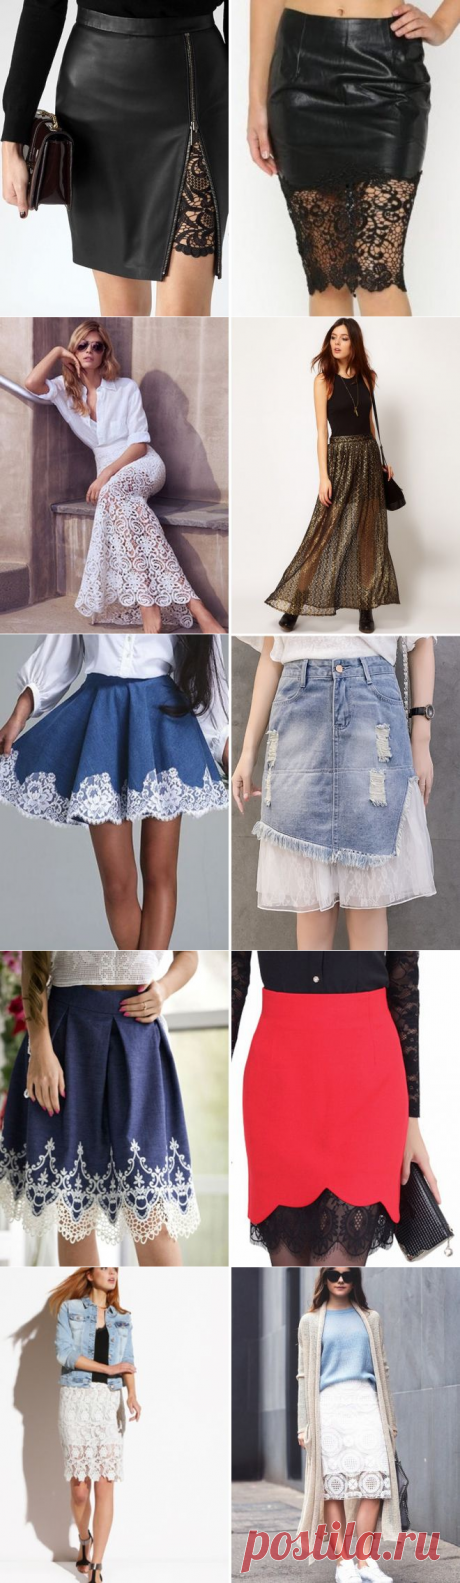 С чем носить кружевную юбку – карандаш, солнце, белая, черная, голубая, джинсовая, вязаная, длинная в пол, миди, короткая юбка с кружевом